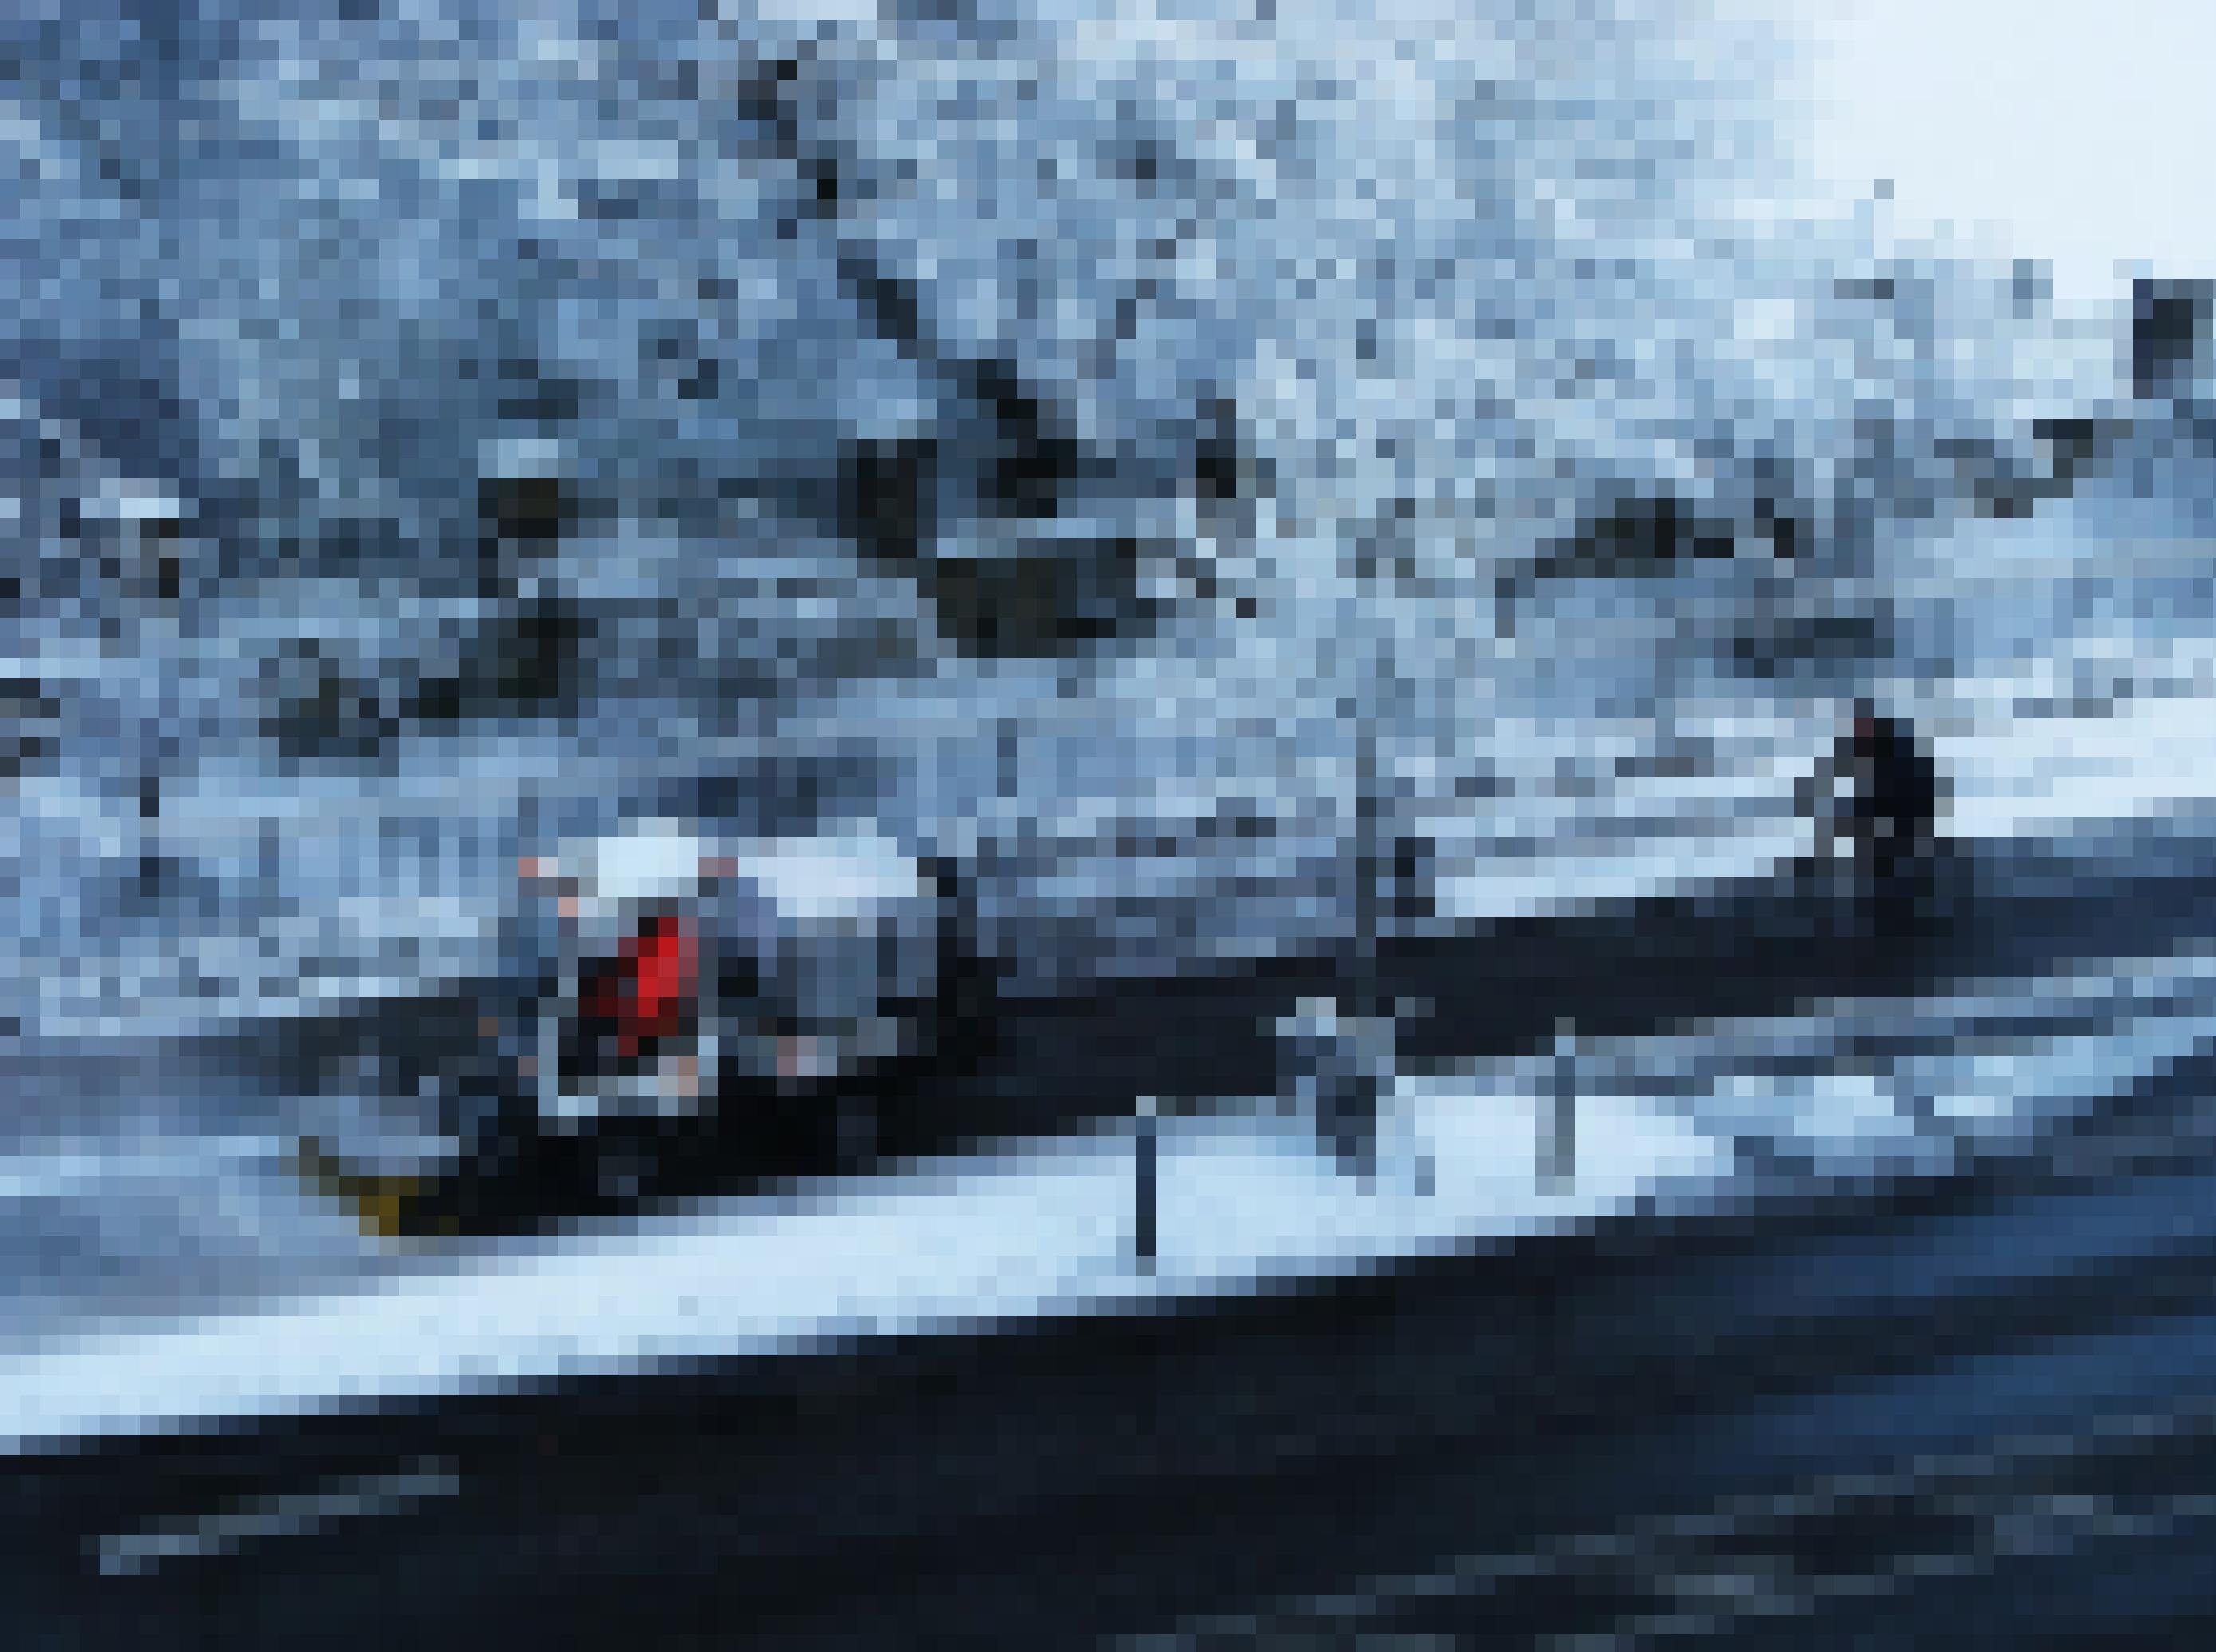 Ein Schneepflug räumt einen verschneiten Radweg.